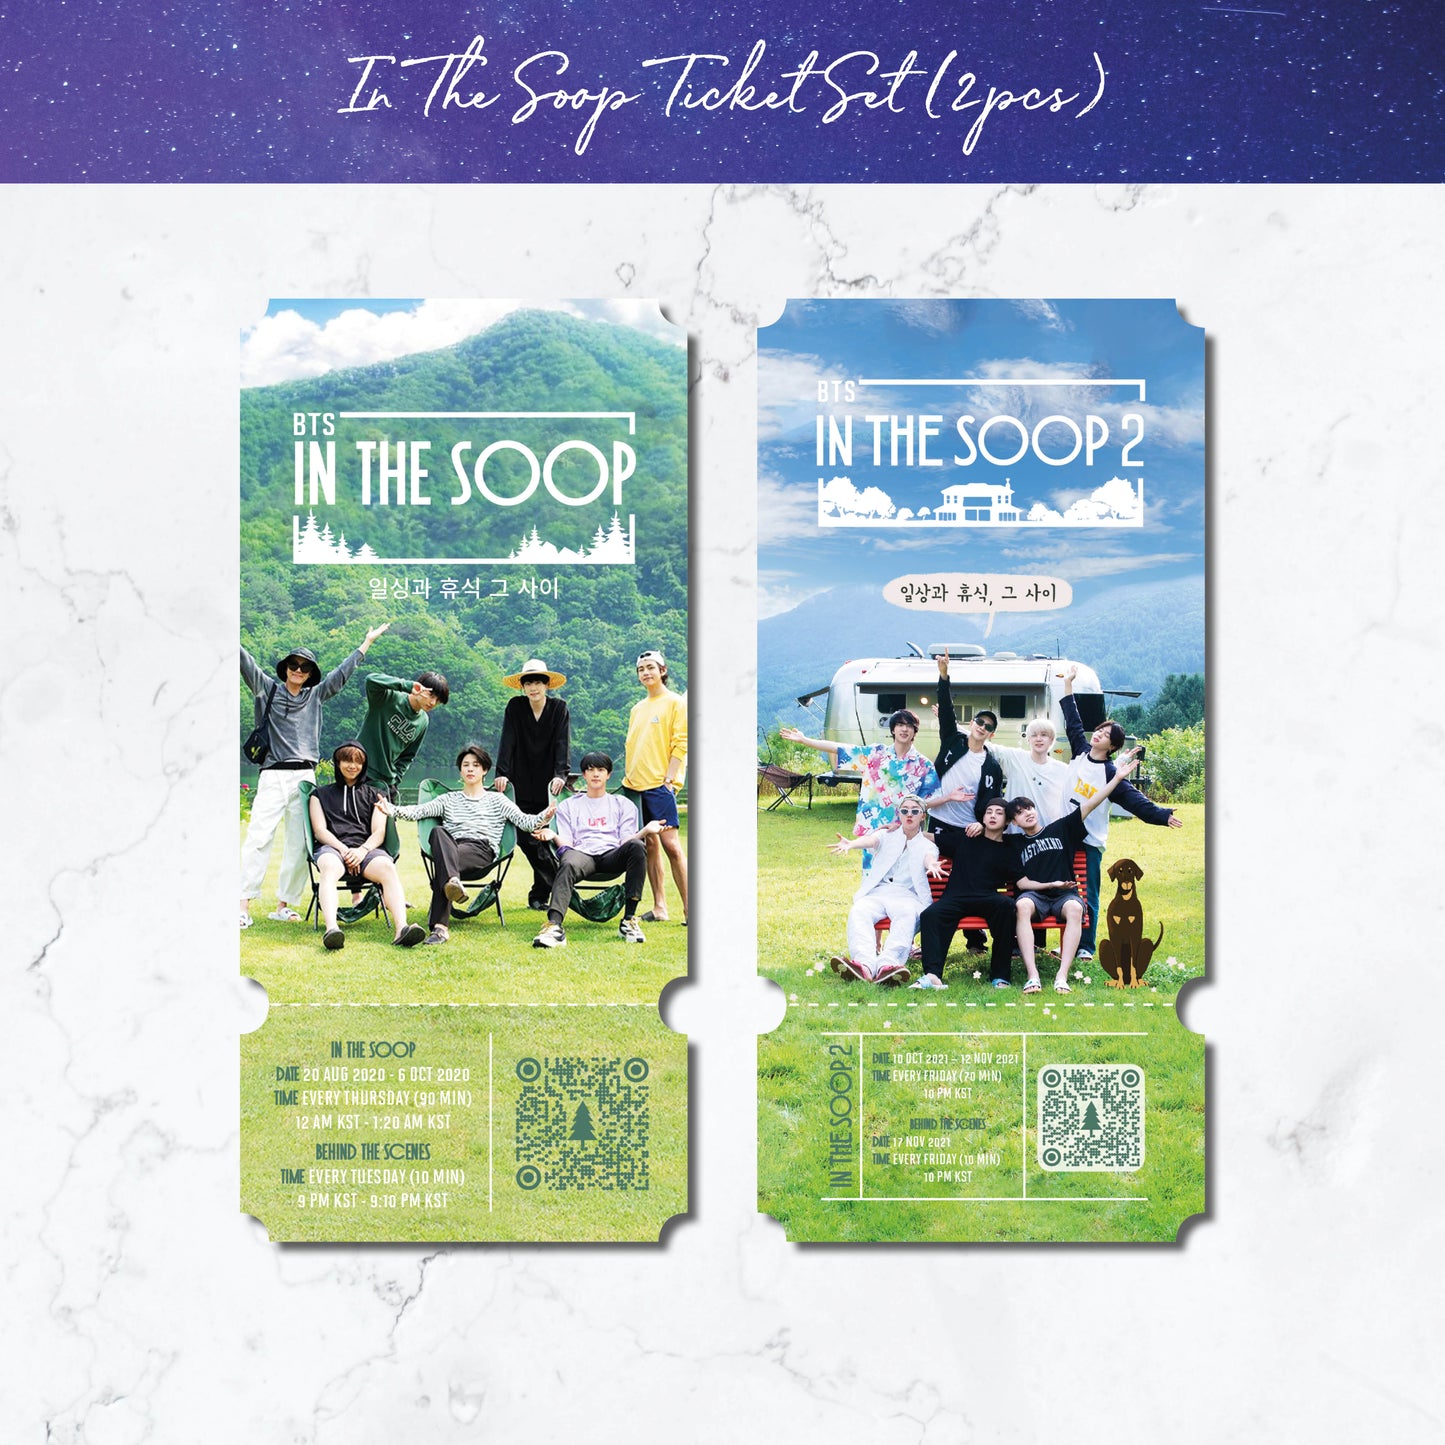 BTS In The SOOP 2 commemorative ticket